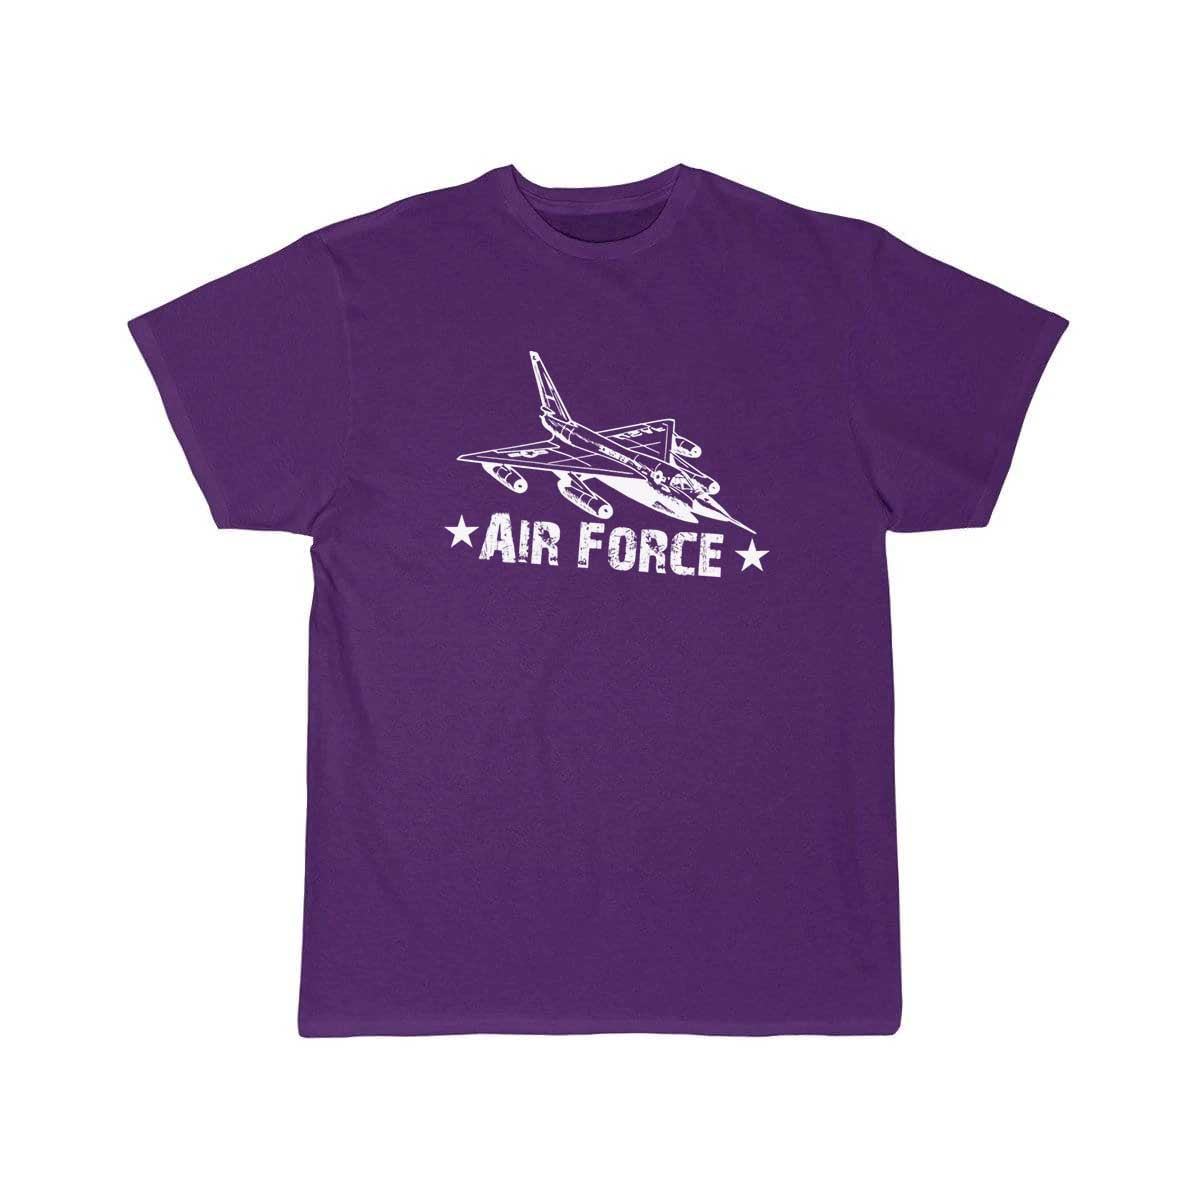 Air force fighter jet t shirt design Military T Shirt THE AV8R